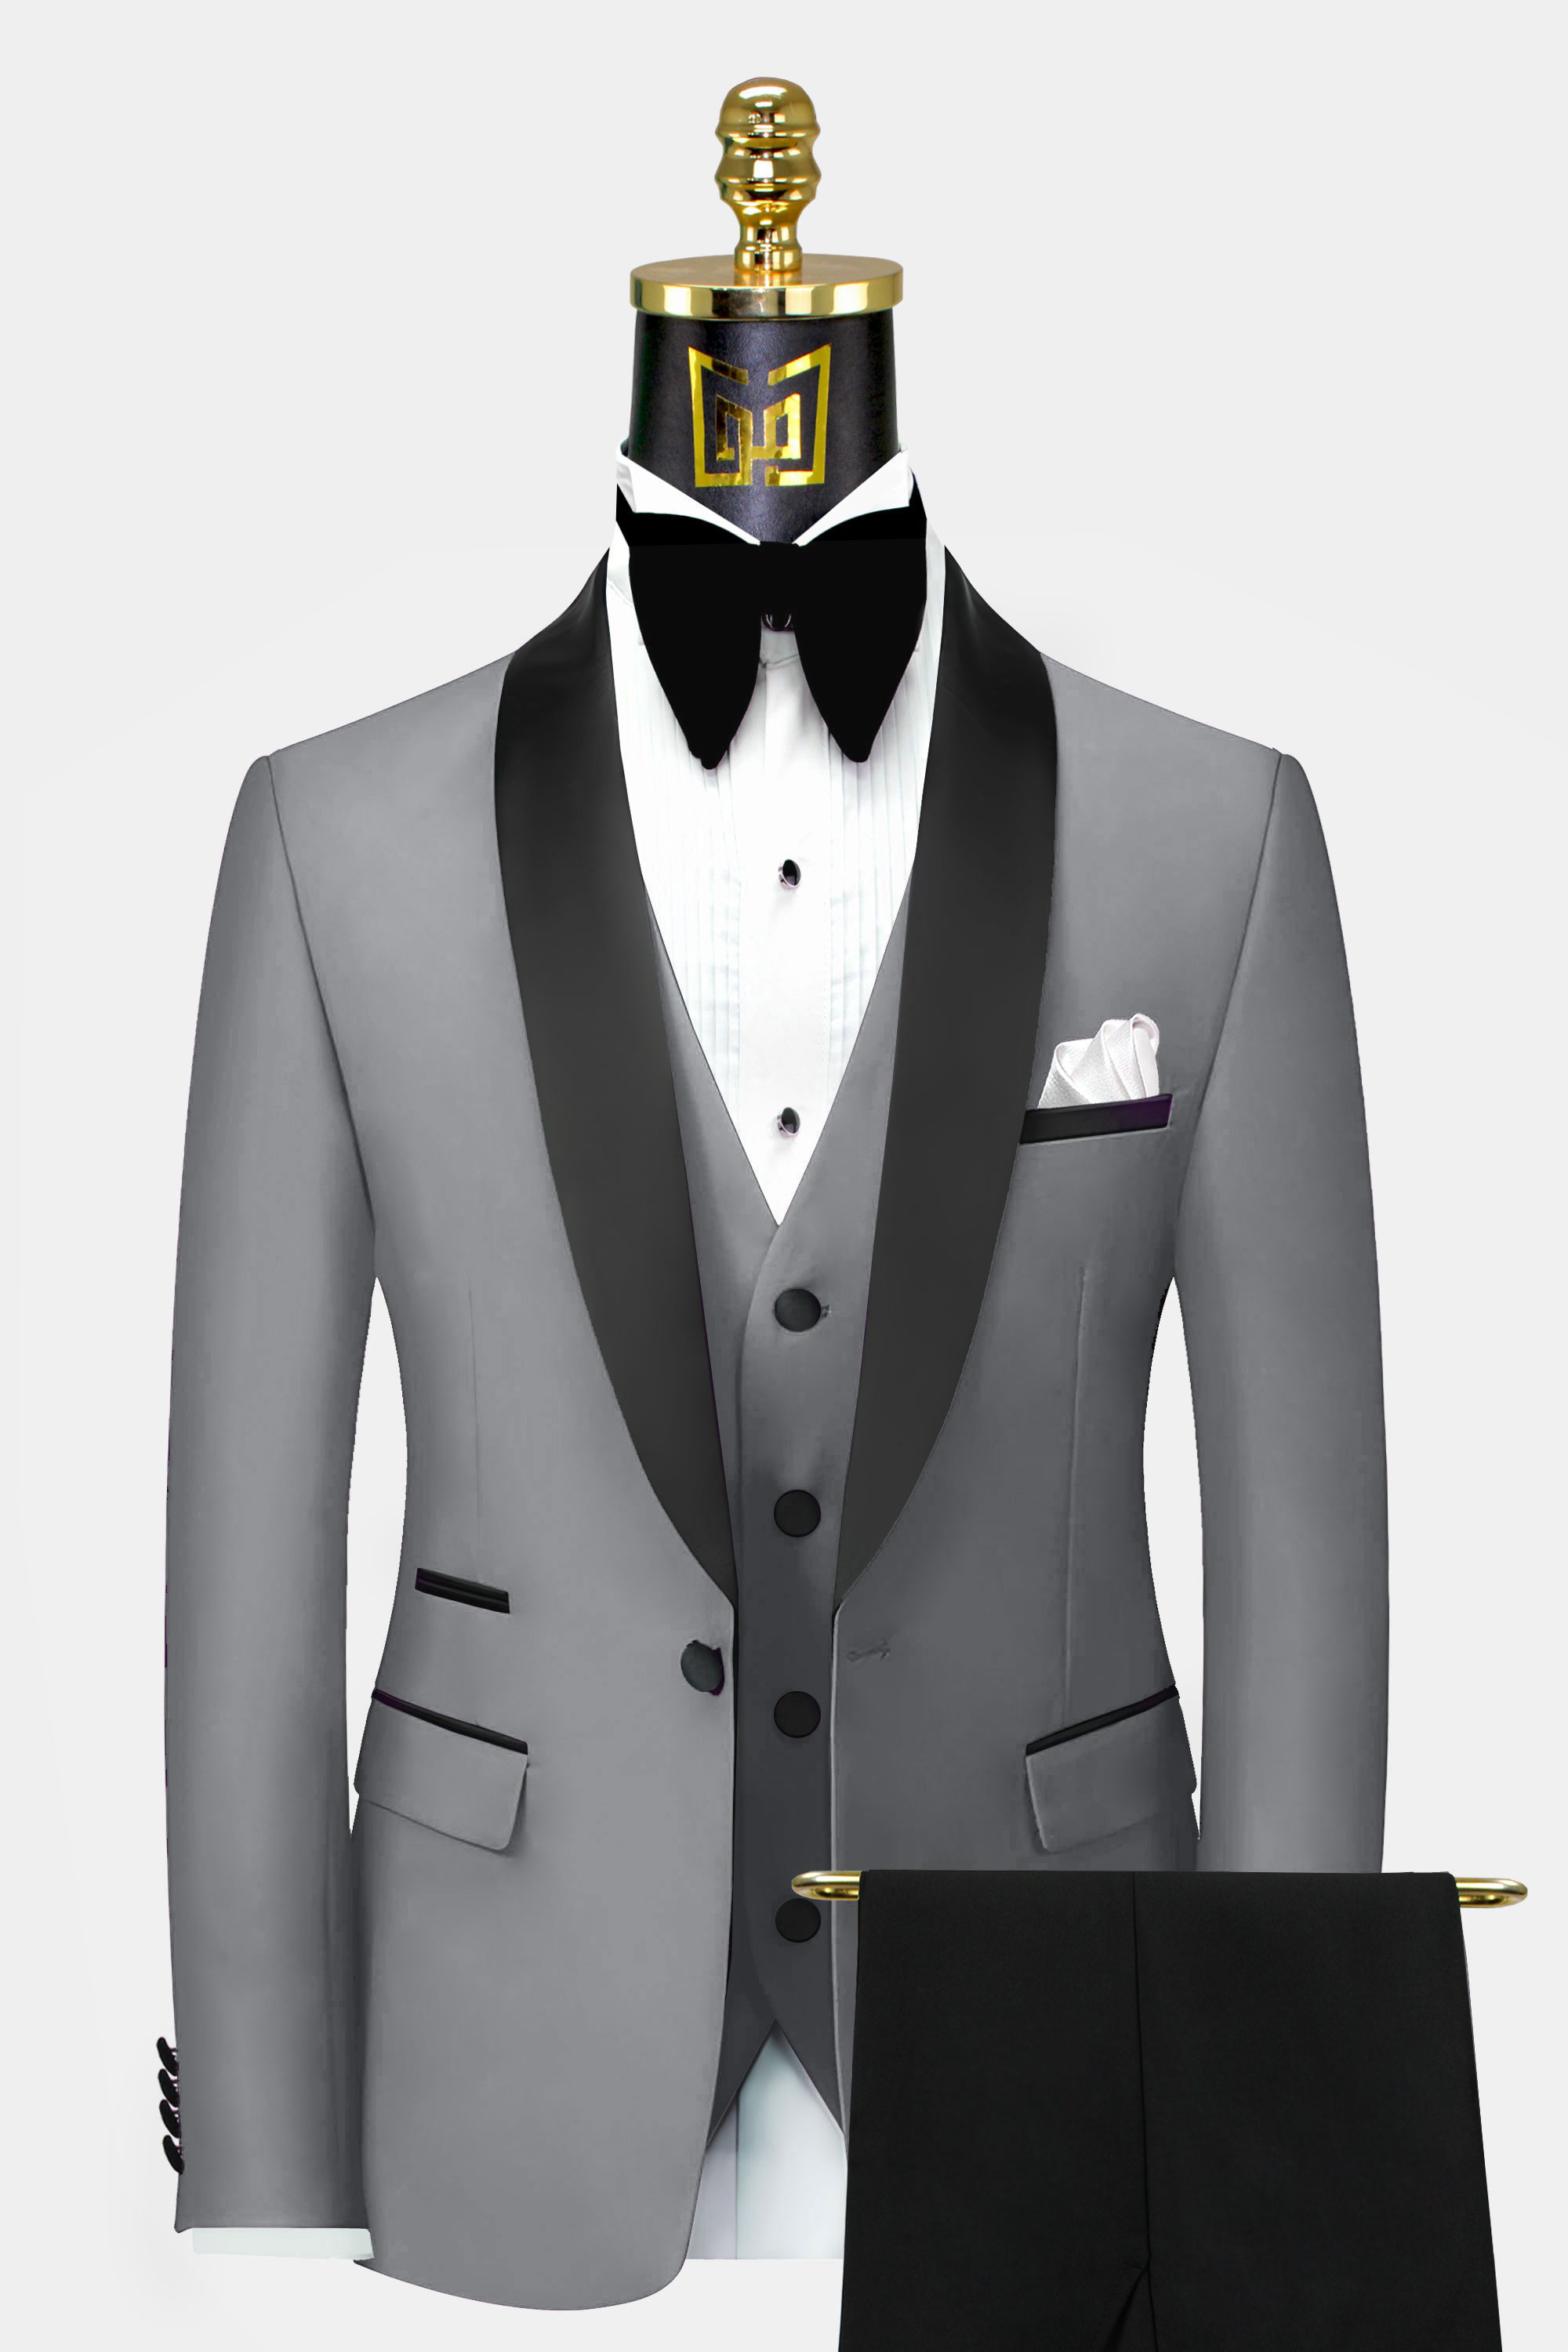 Men's Wedding Suits & Groom's Tuxedos